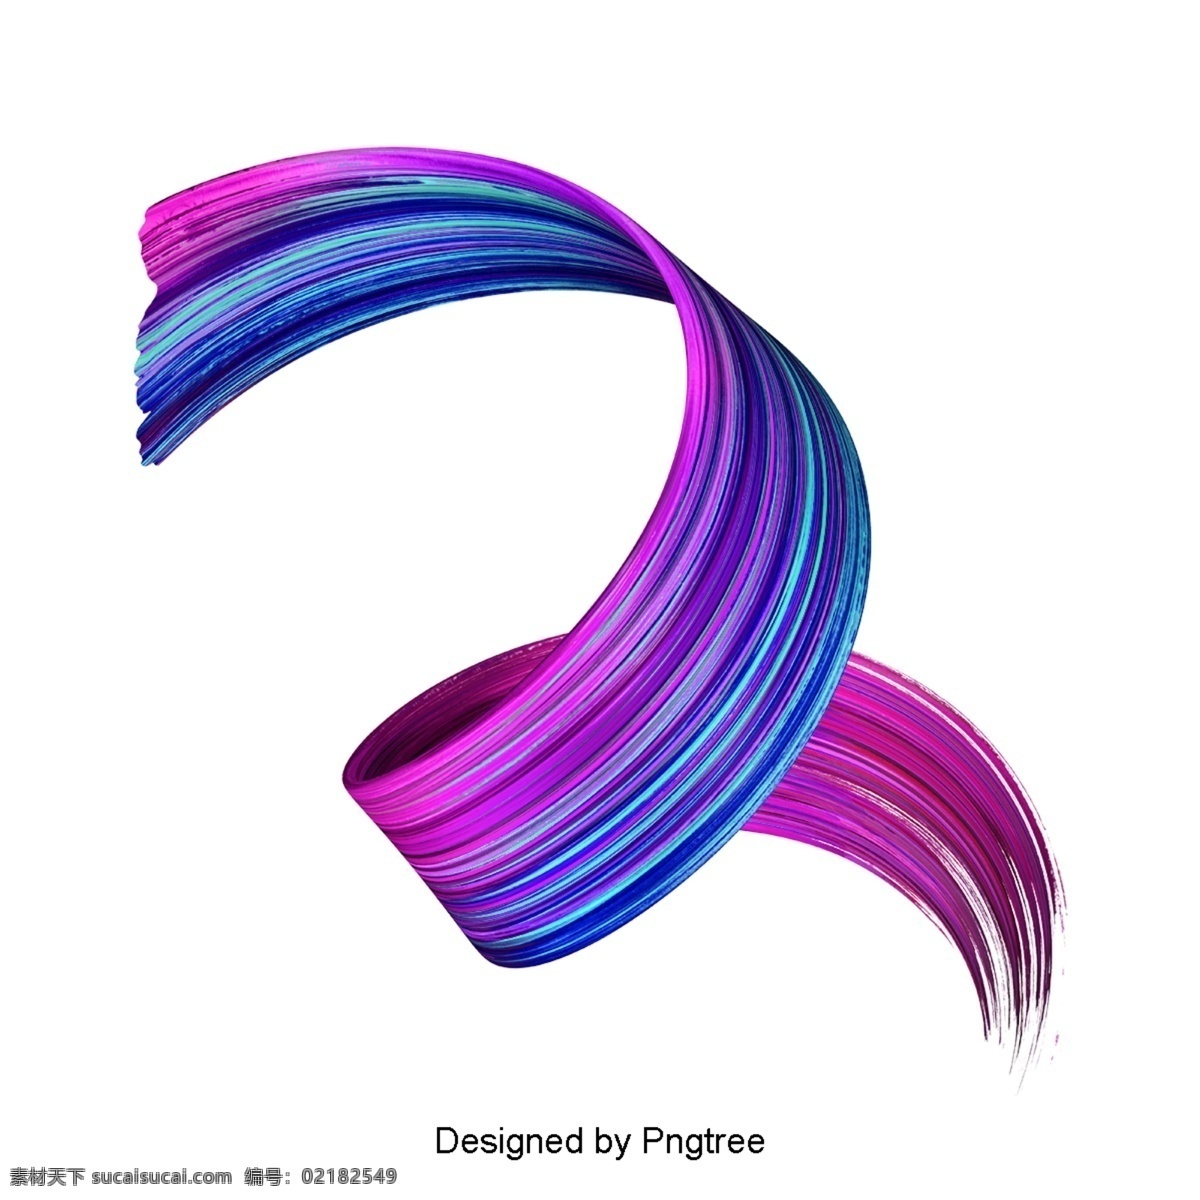 简单 梯度 流体 设计模式 时尚 简洁 流畅 色彩 图形设计 材料 渐变 形状 抽象